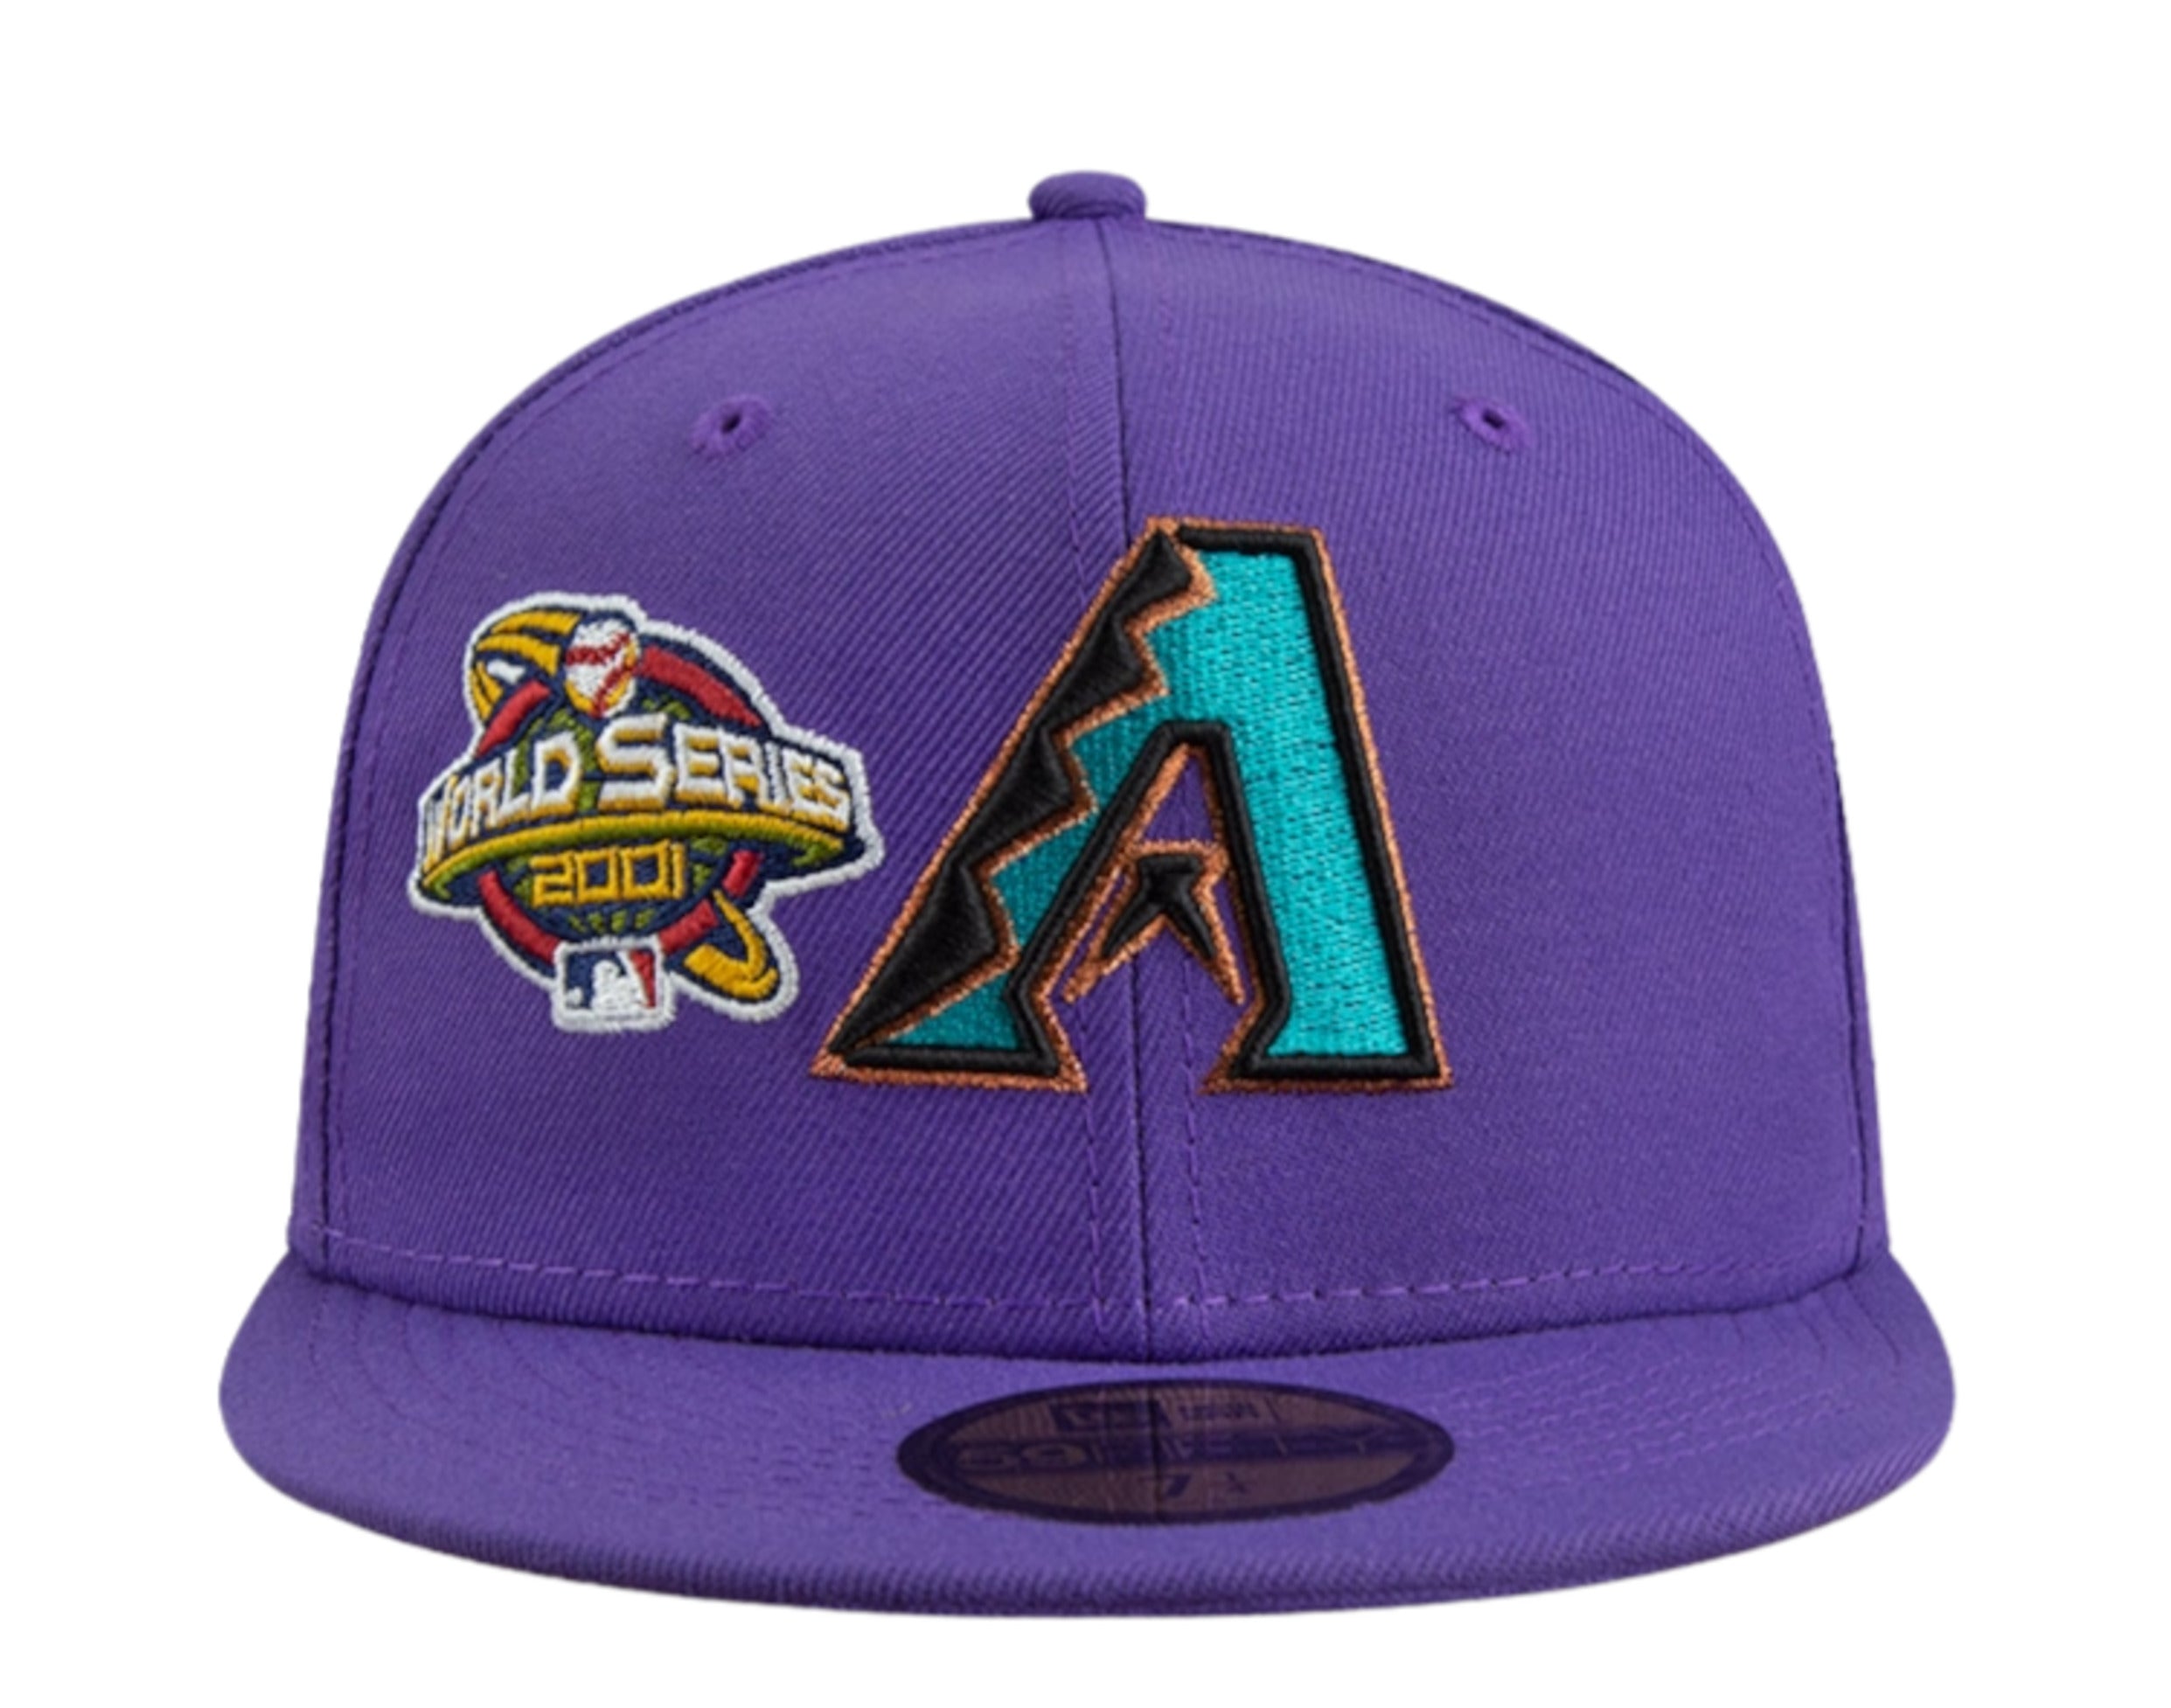 New Era 59Fifty Arizona Diamondbacks 1998 Jersey Hat - Purple, Teal, M –  Hat Club